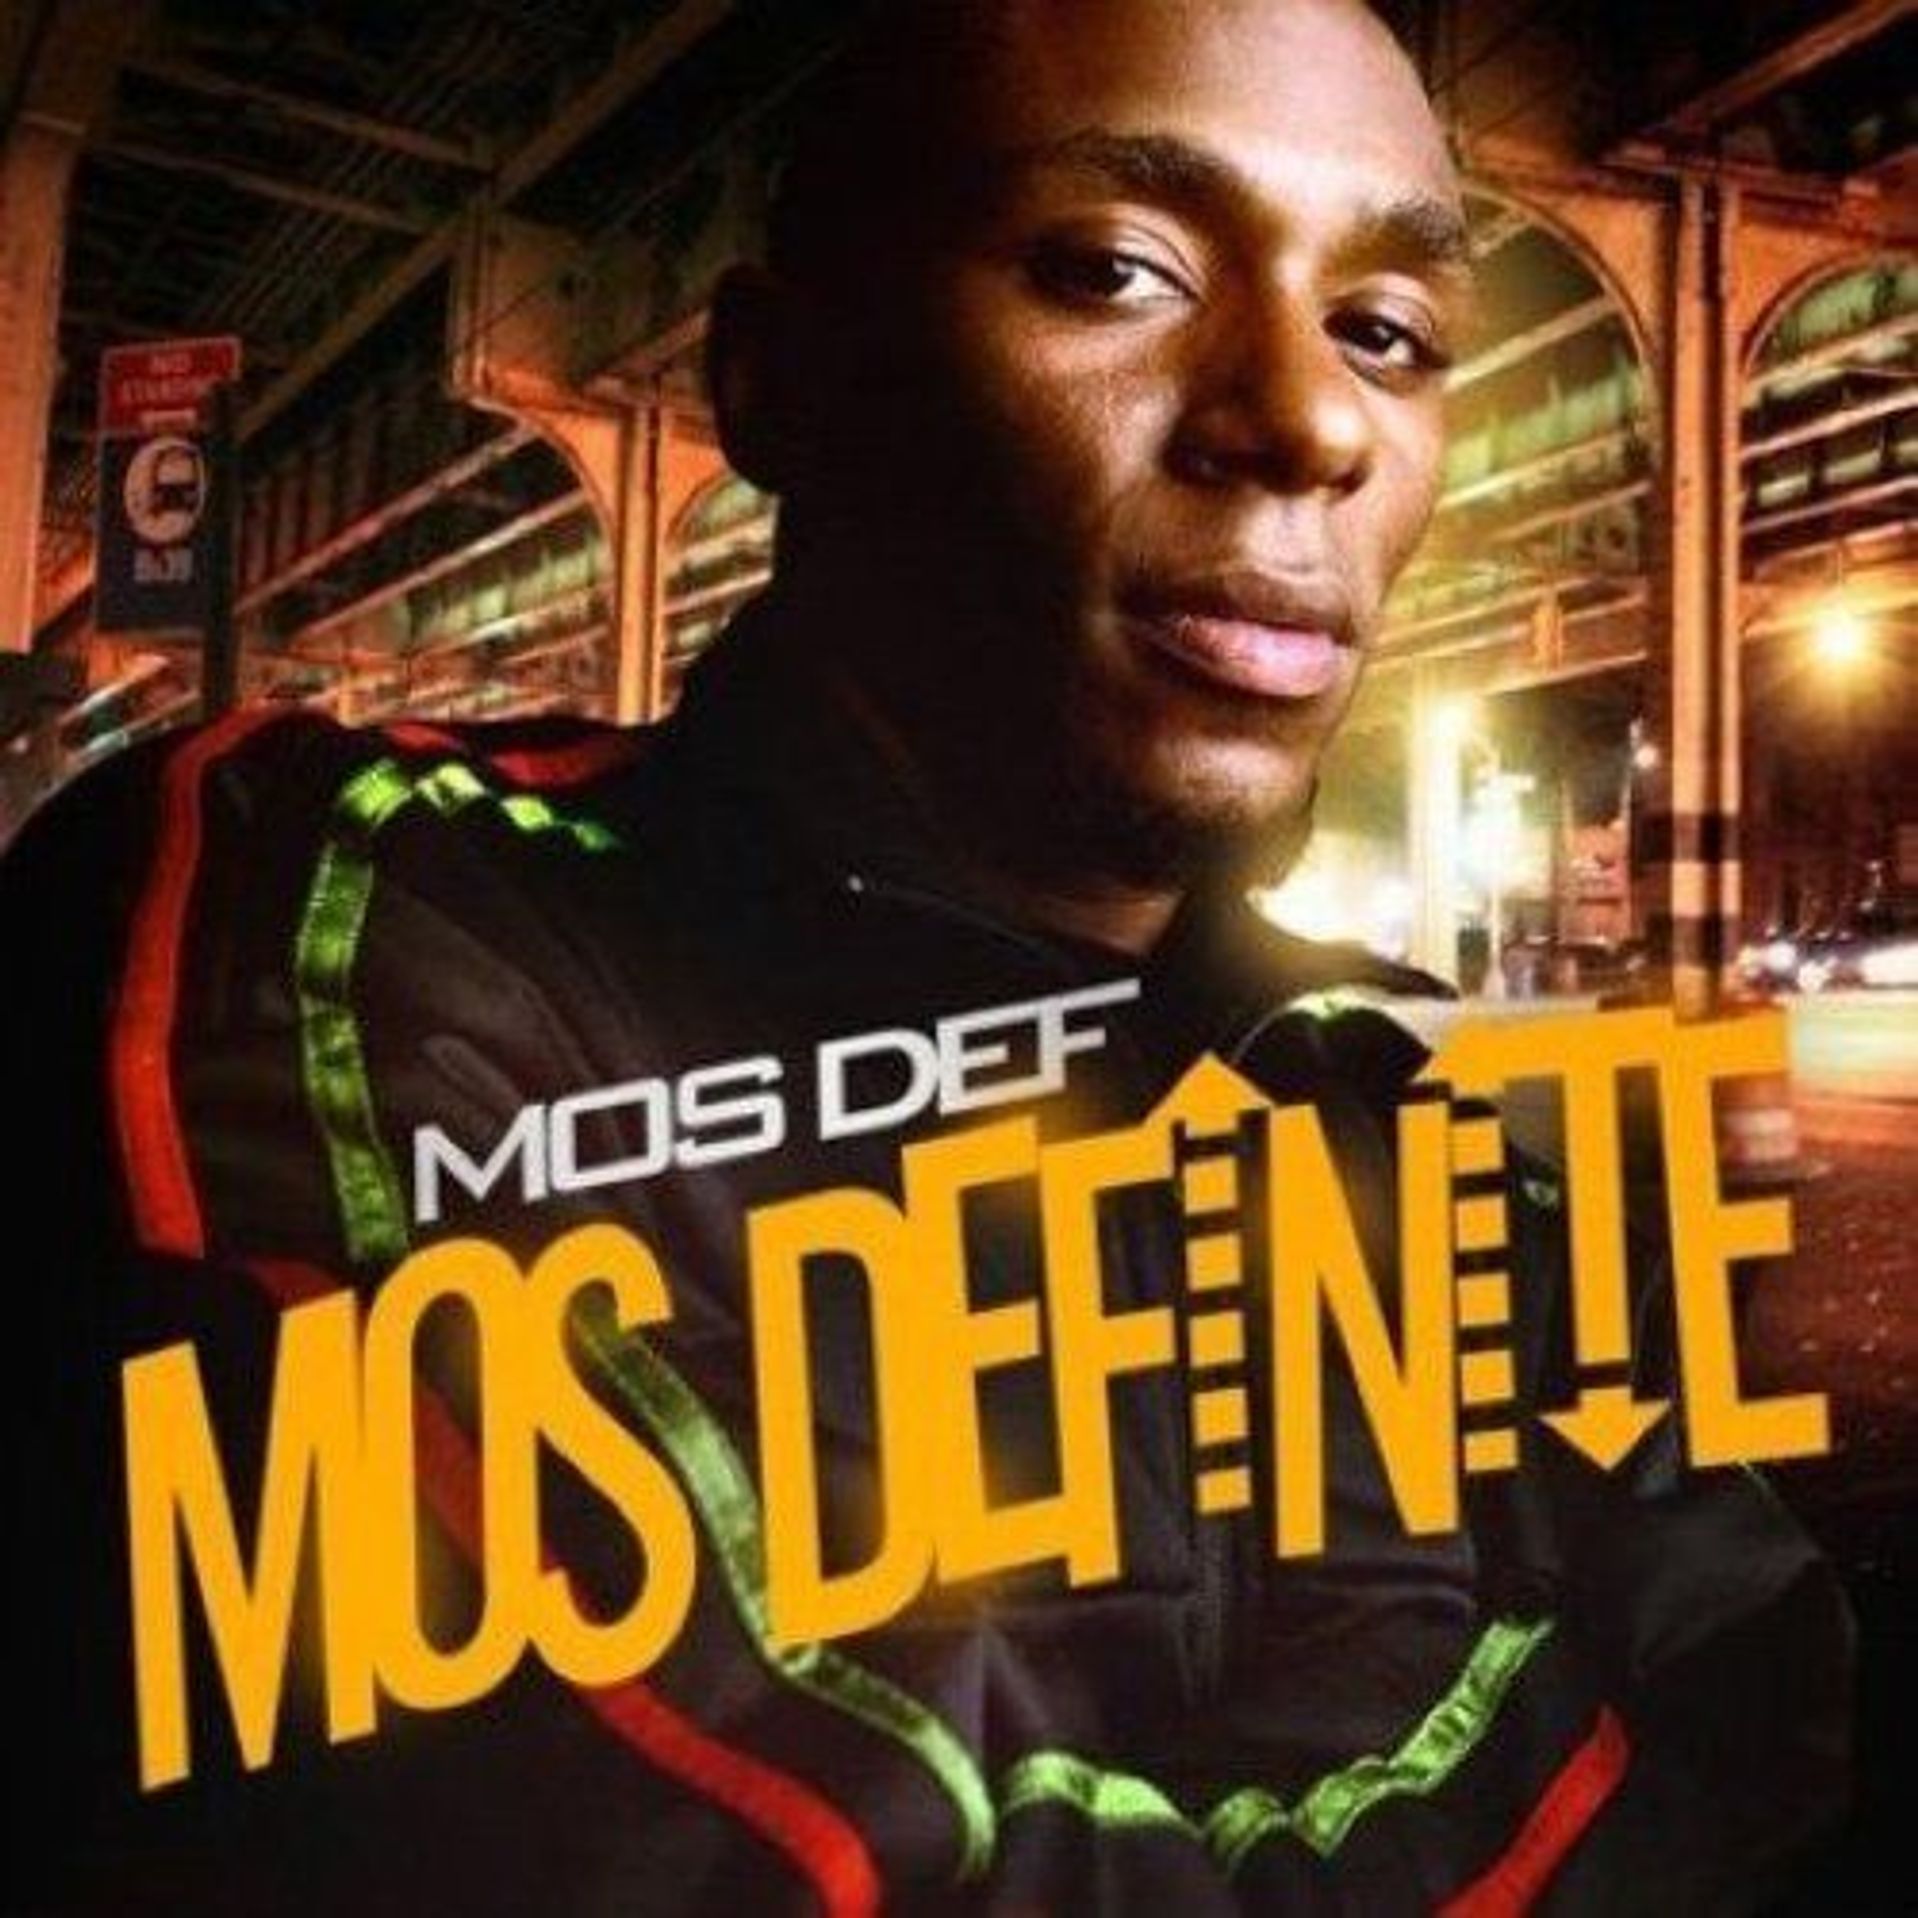 Album Title: Mos Definite by: Mos Def